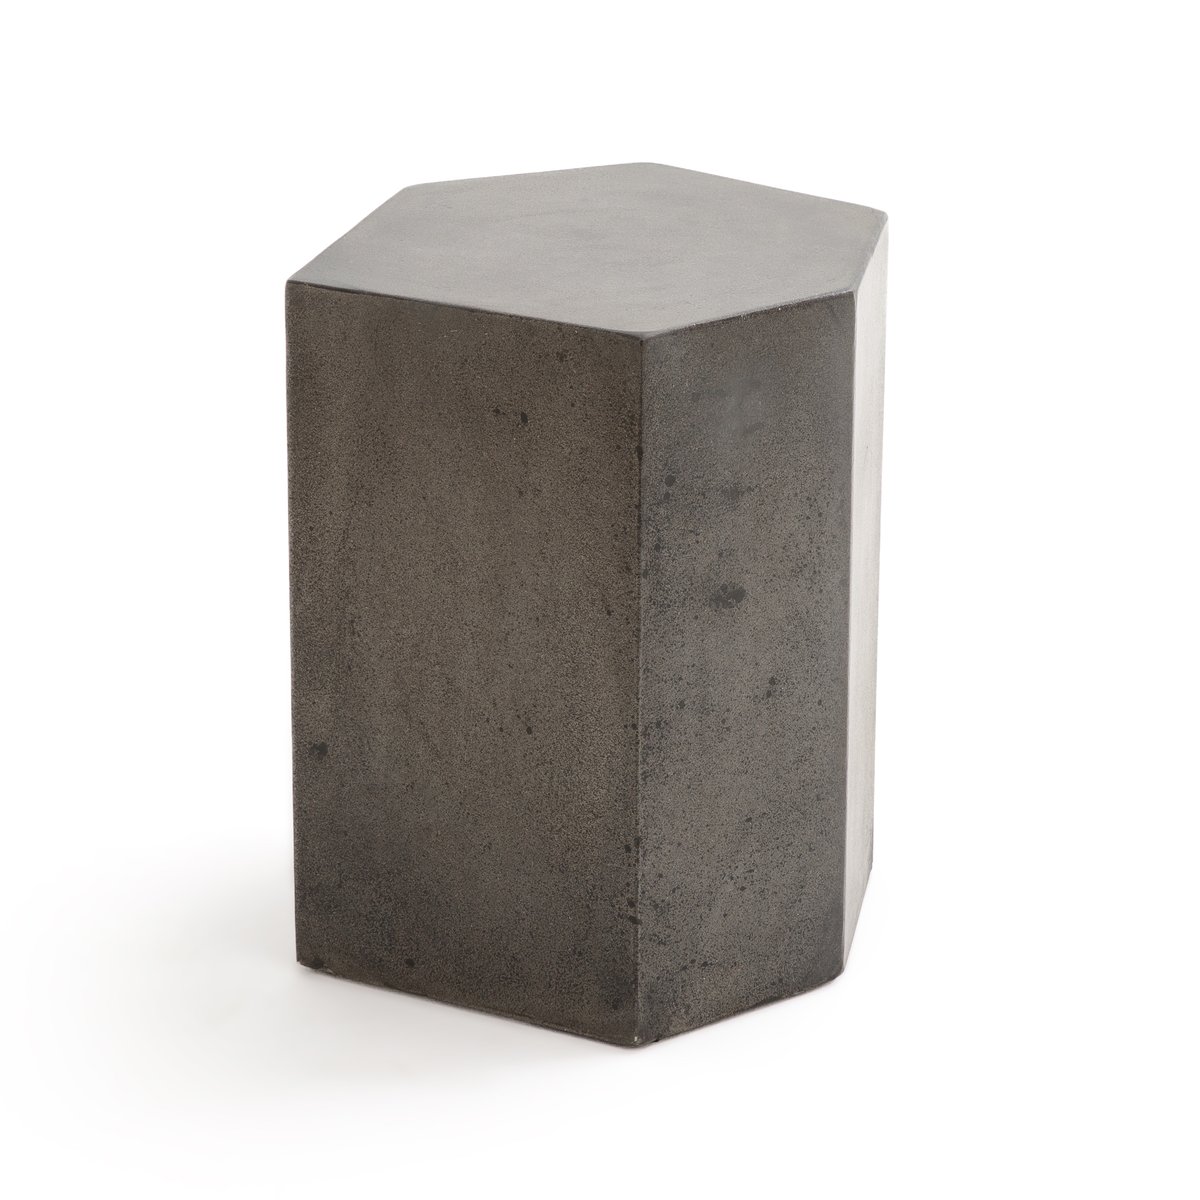 Столик La Redoute Журнальный из цементного волокна CONCRITE единый размер серый - фото 2